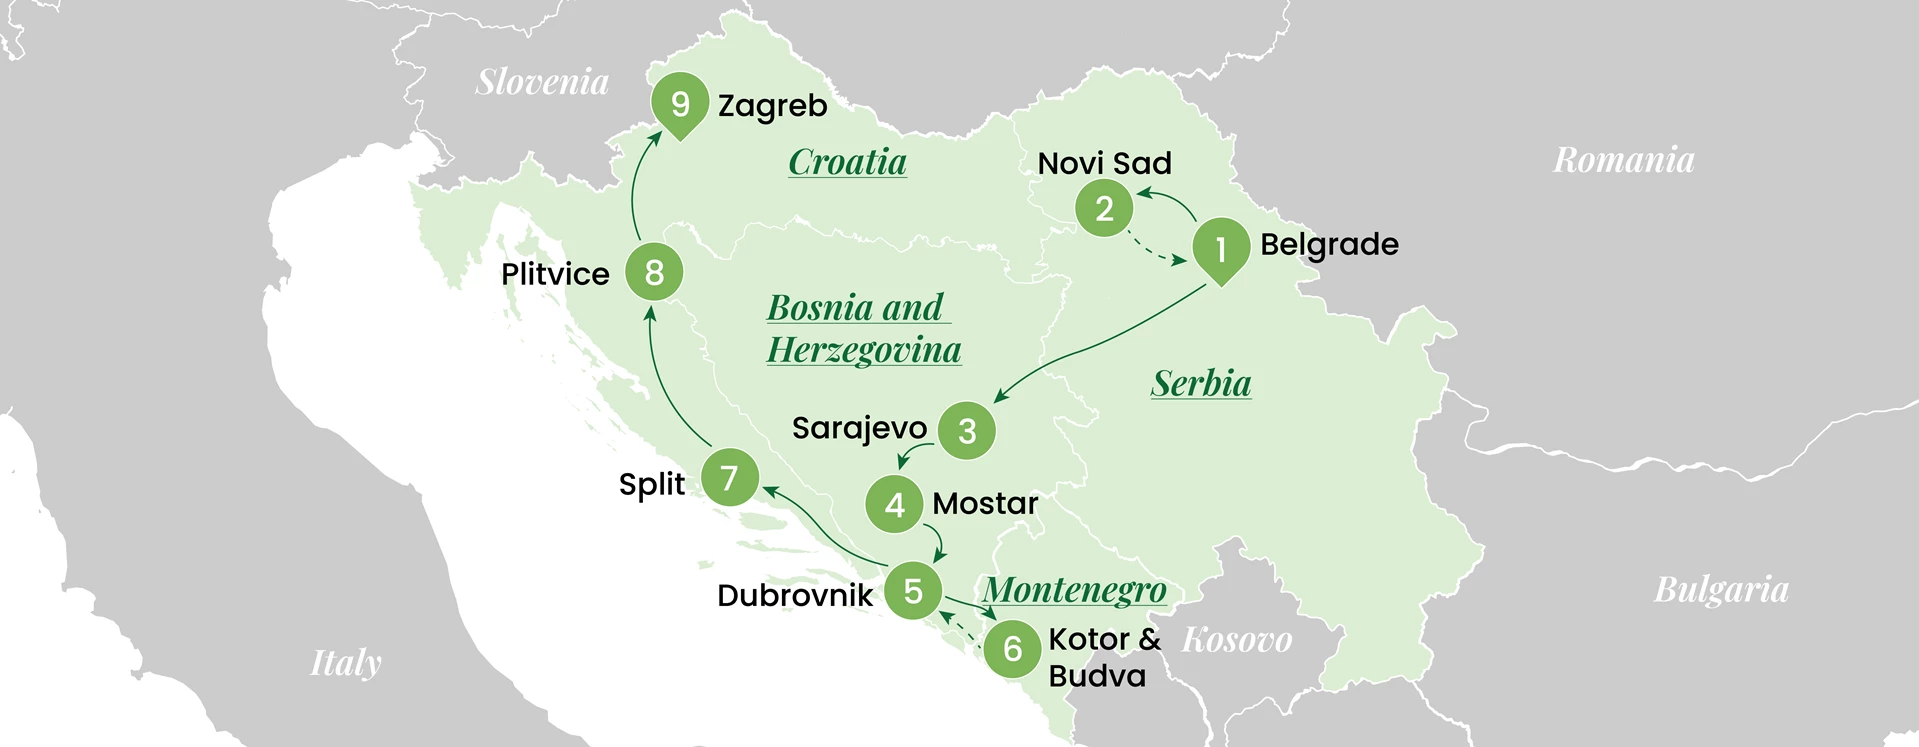 Serbia, Bosnia and Herzegovina, Croatia and Montenegro tour